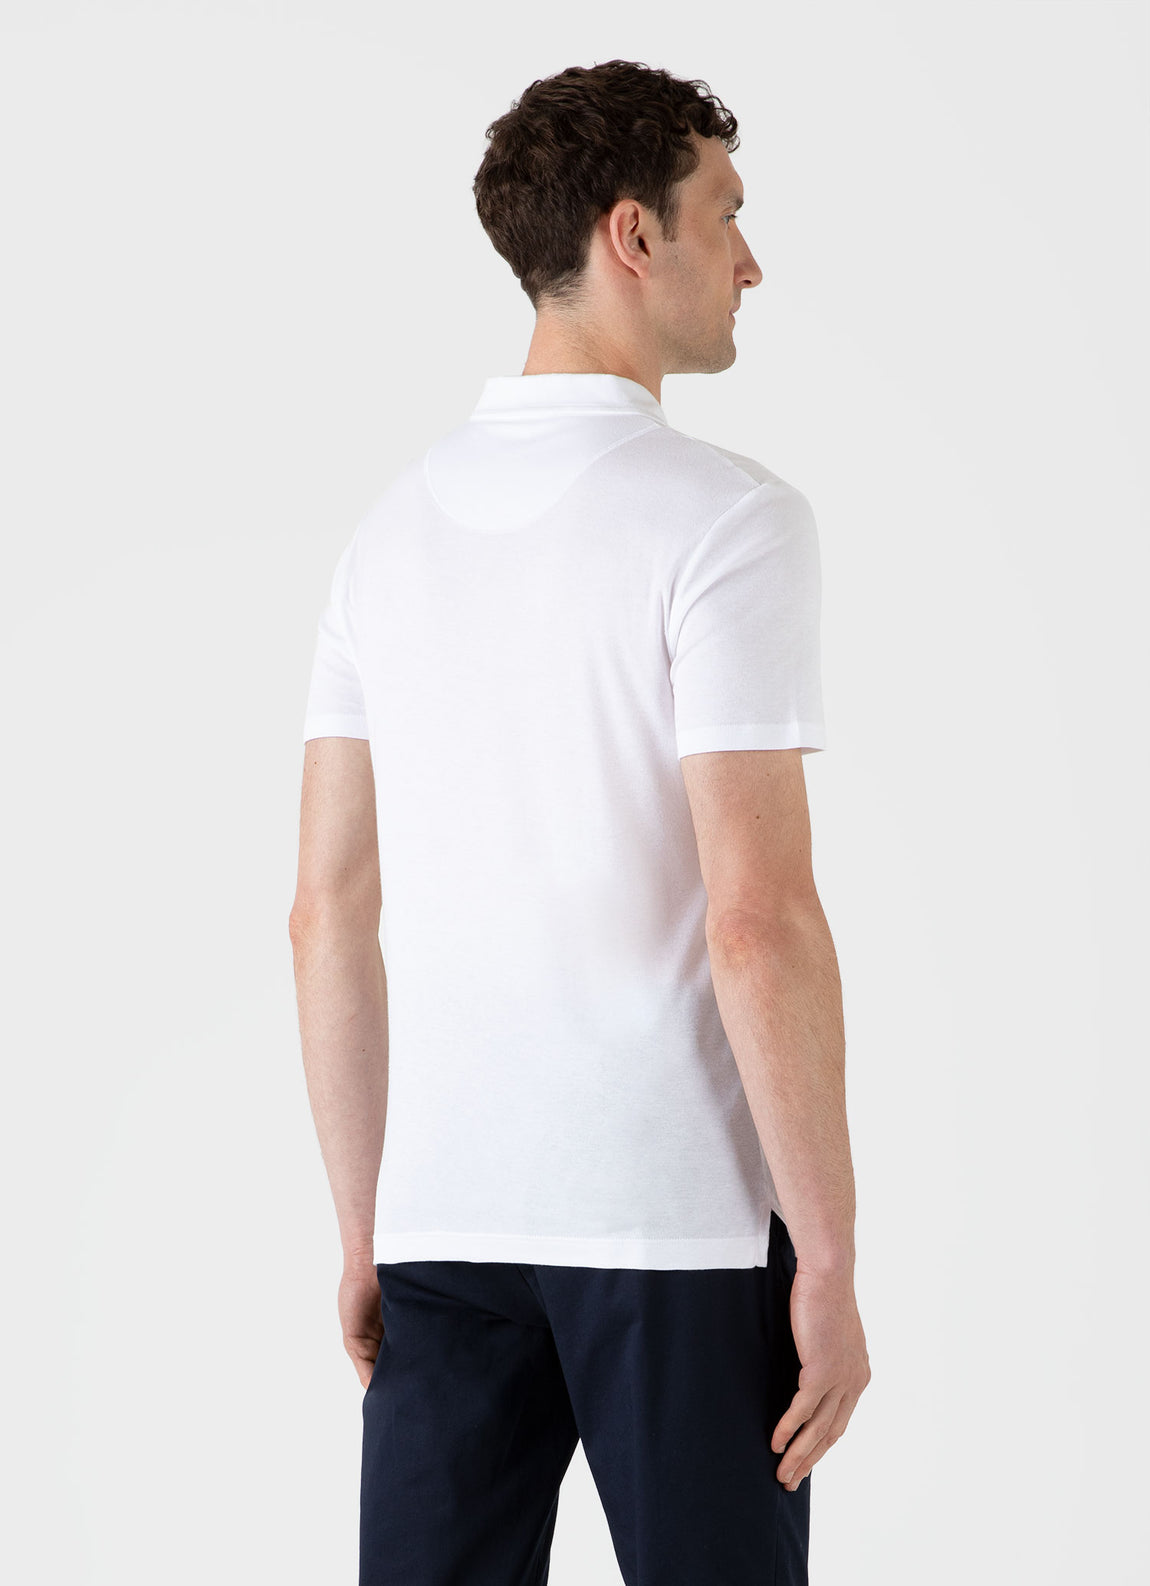 Men's Sea Island Cotton Riviera Polo Shirt in White